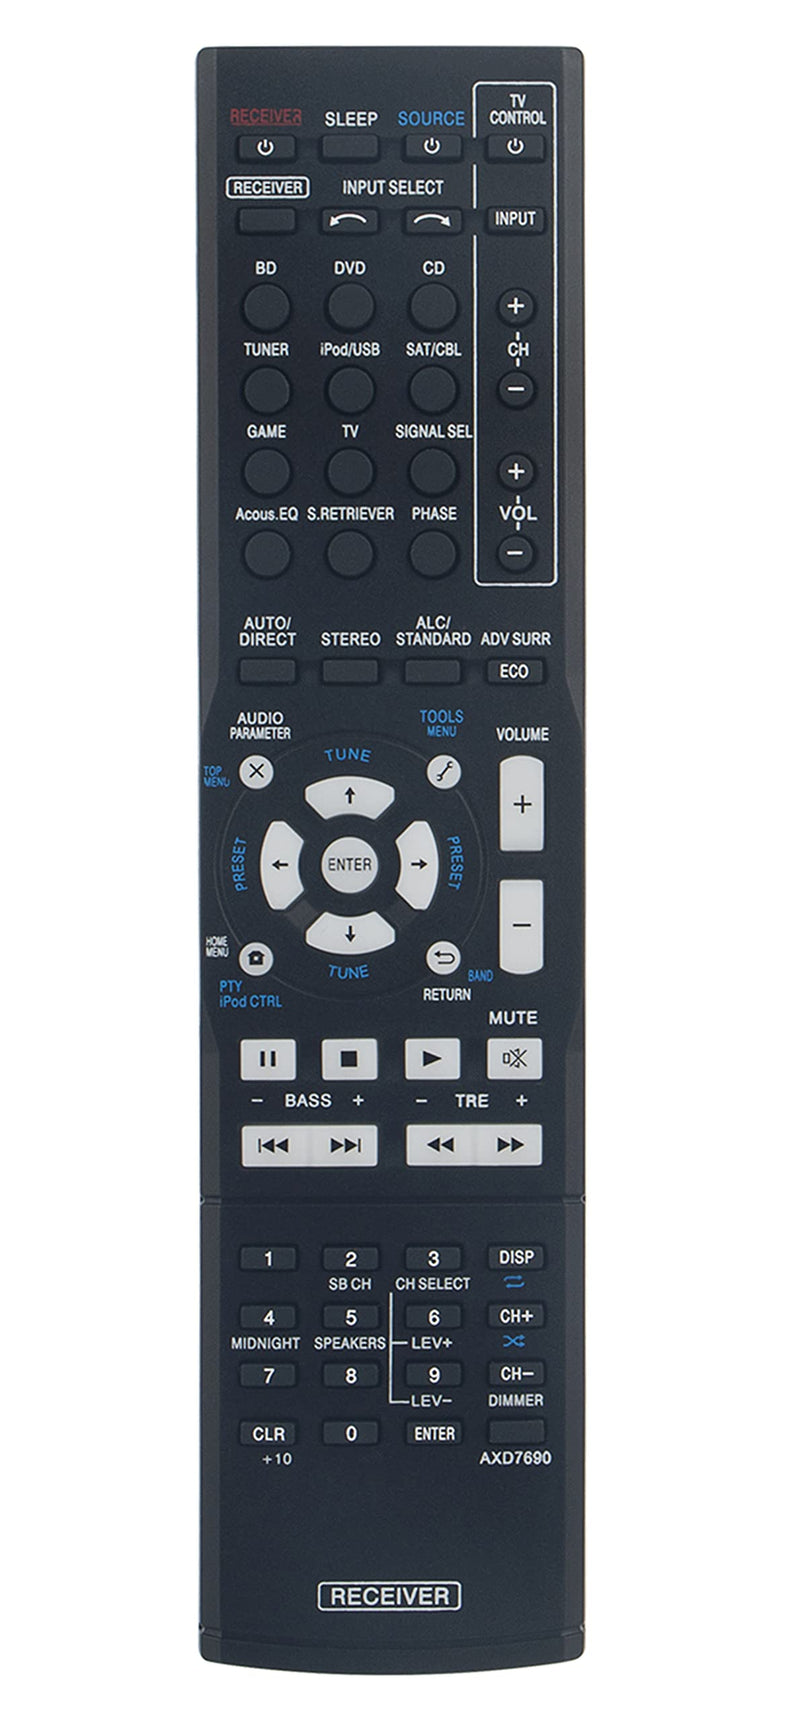  [AUSTRALIA] - AXD7690 Replaced Remote fit for Pioneer AV Receiver VSX-300 VSX-523-K VSX-524-K VSX-424-K VSX-329-K VSX-423-K VSX-423-S VSX-323-K VSX-5231 HTP-072 VSX-324-K-P